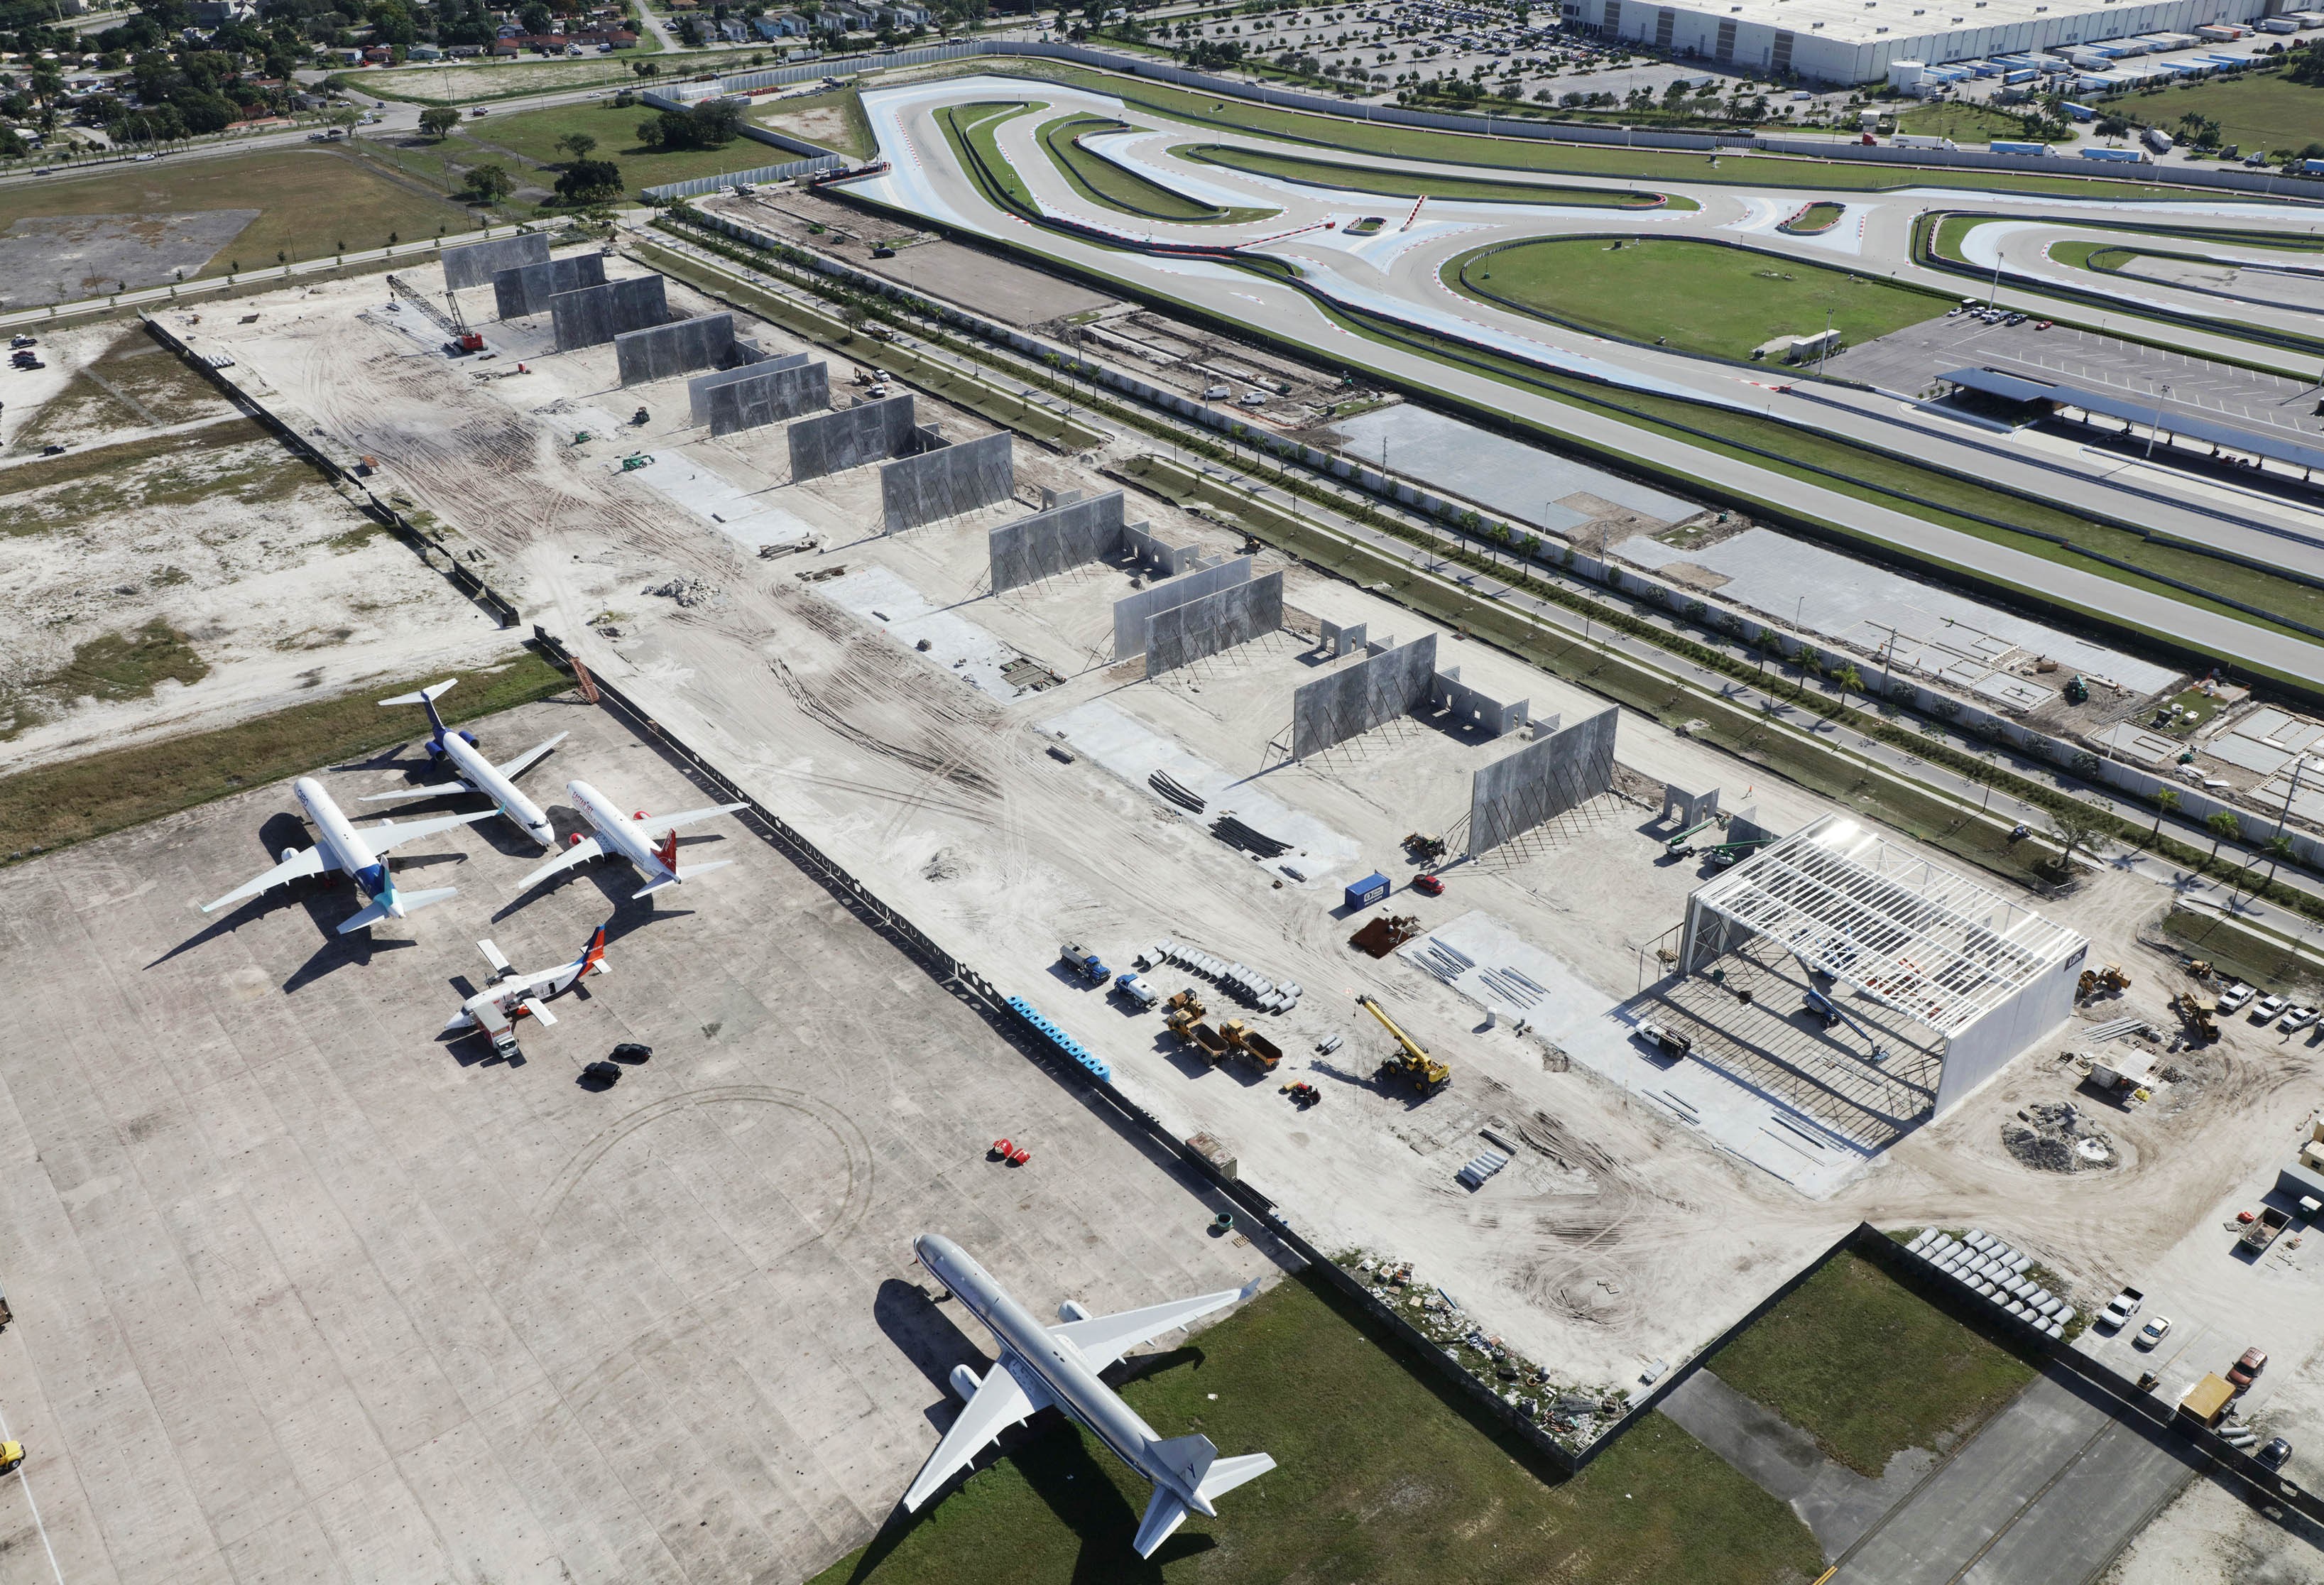 New Hangar Construction at OPF